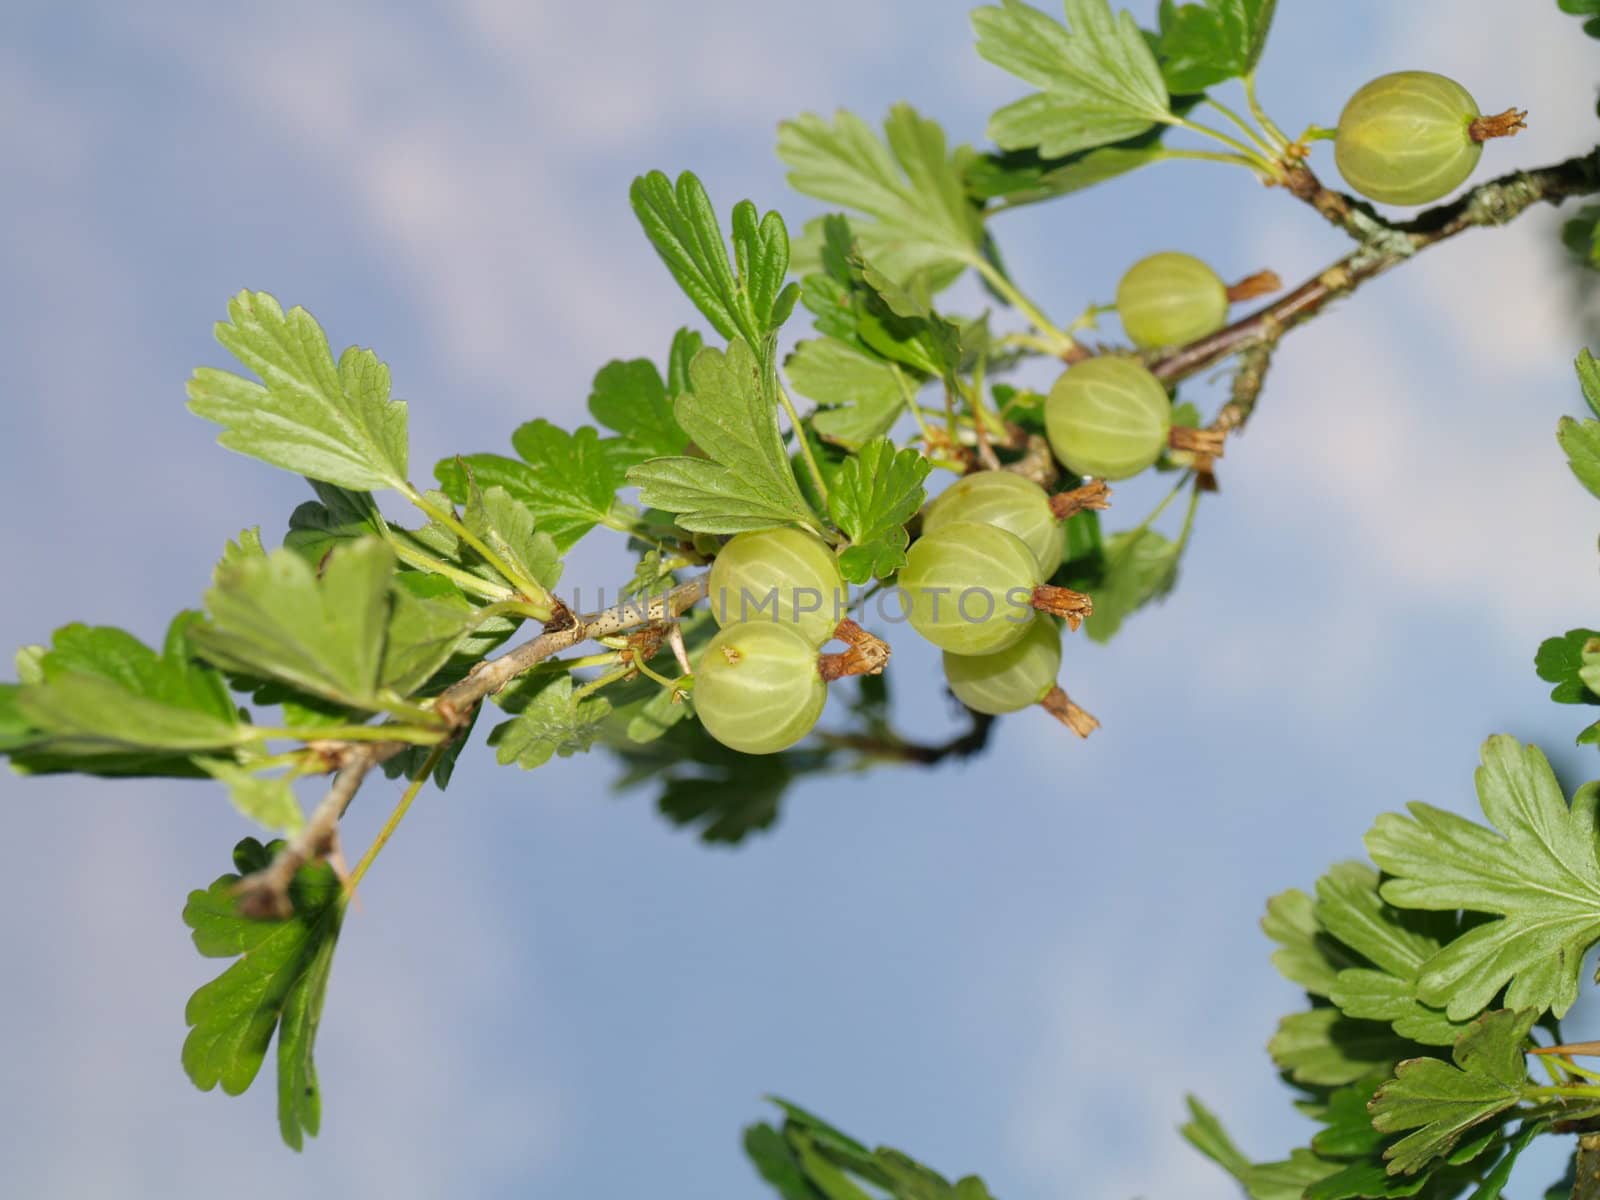 berries on branch by viviolsen